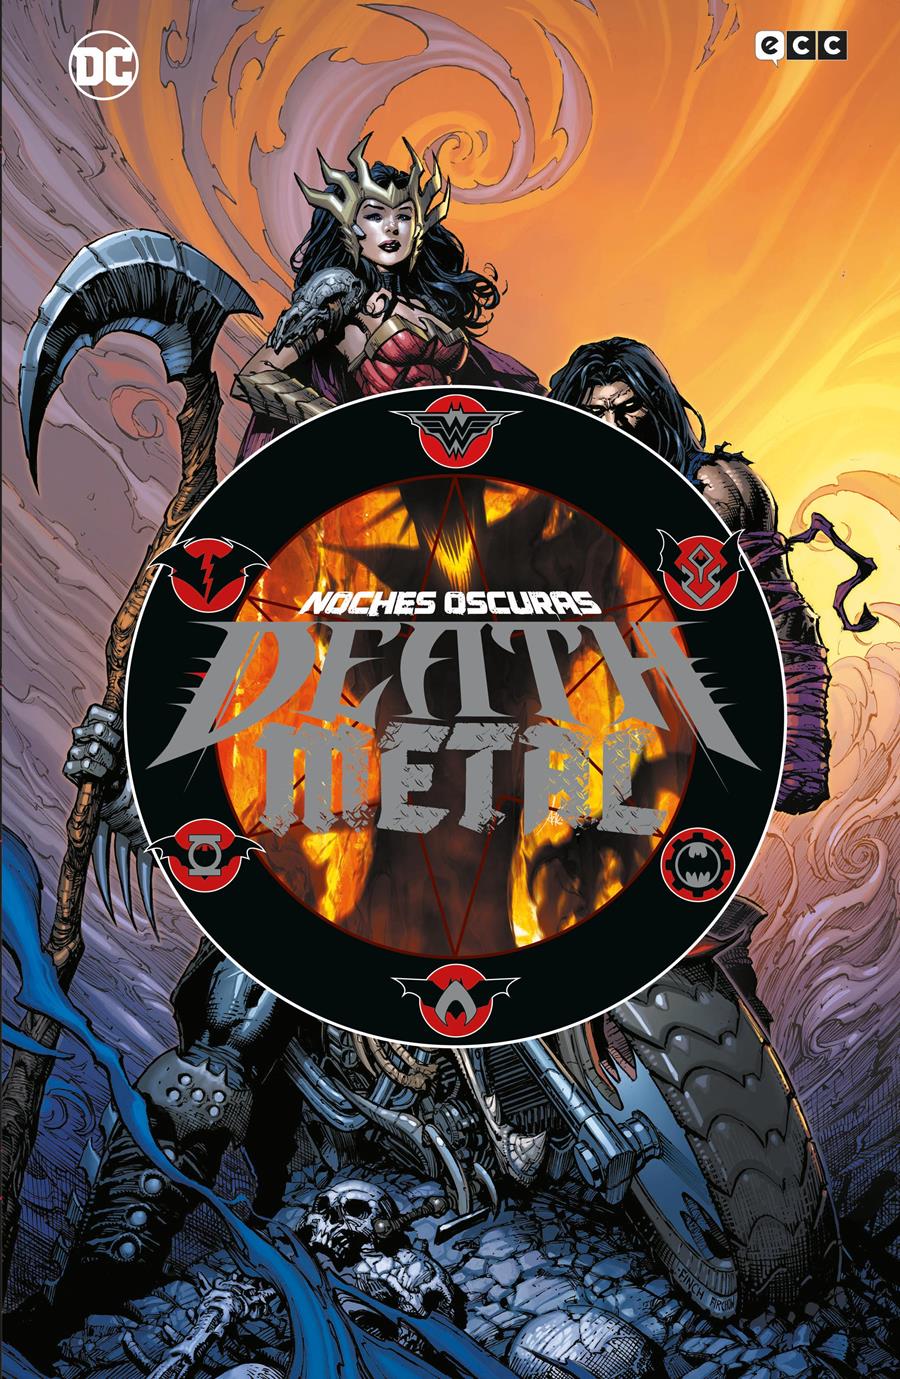 Noches oscuras: Death Metal (Edición Deluxe) | N0822-ECC25 | Greg Capullo / Scott Snyder | Terra de Còmic - Tu tienda de cómics online especializada en cómics, manga y merchandising